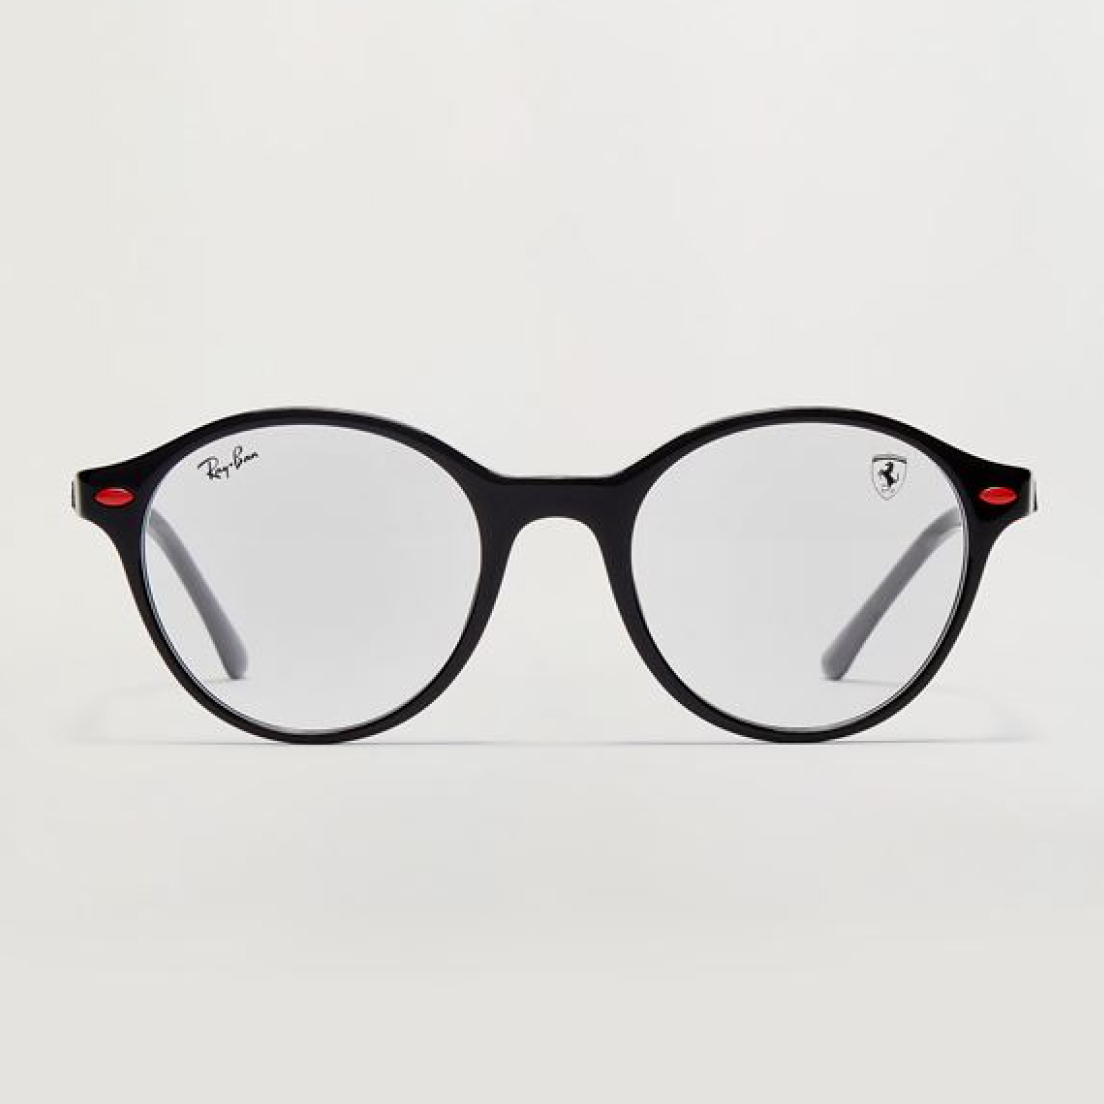 Ray-Ban for Scuderia Ferrari black eyeglasses frame